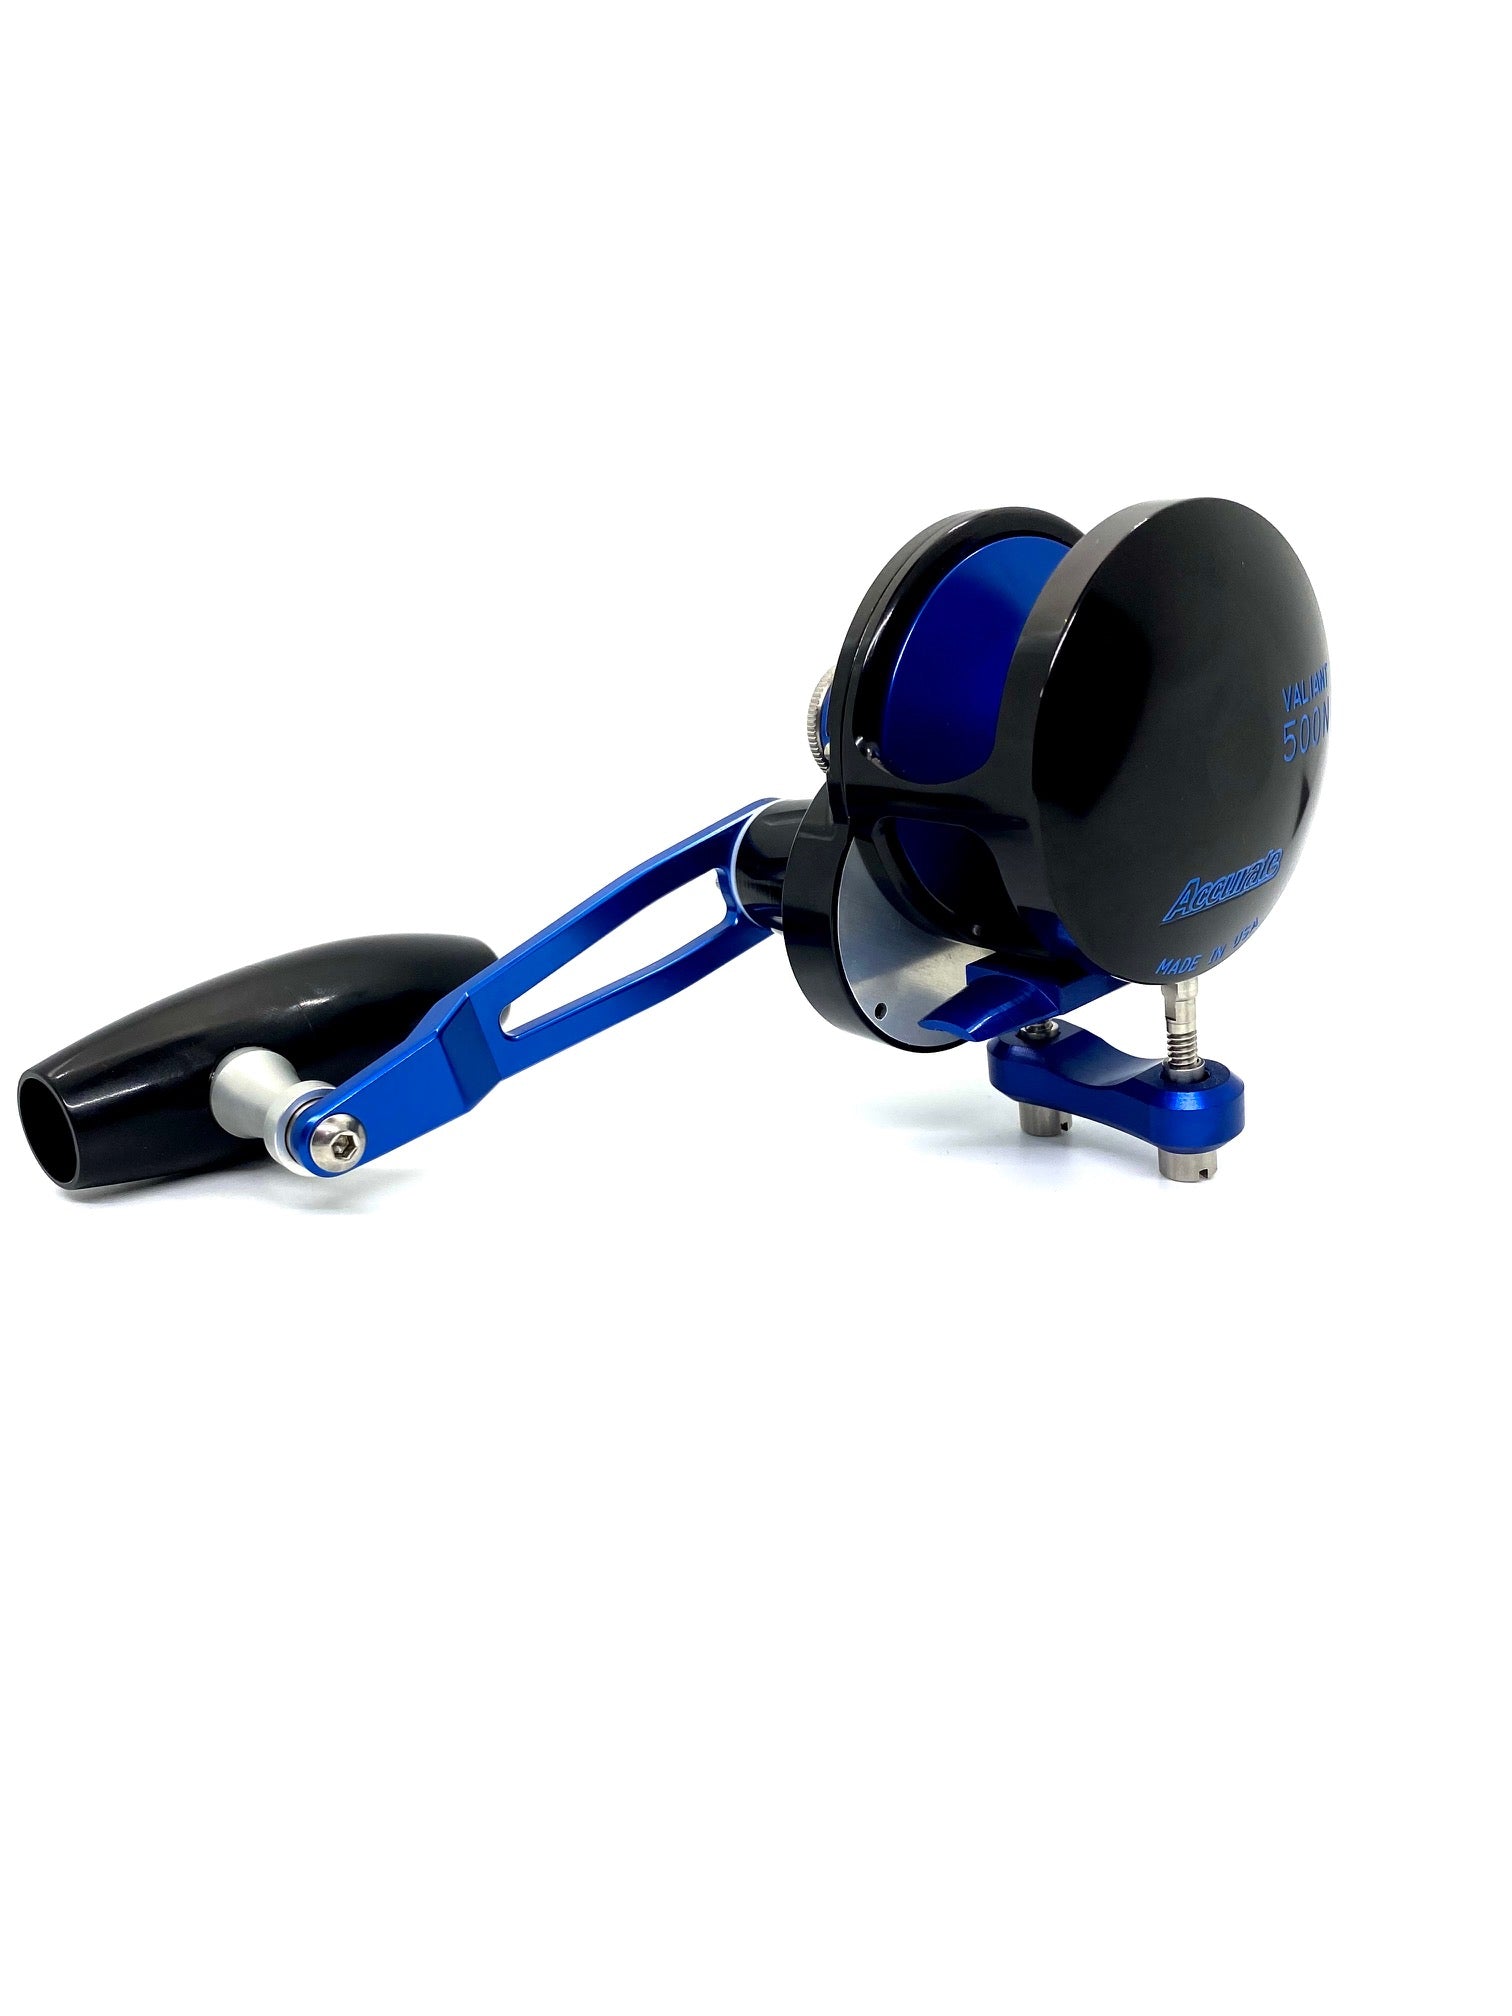 Slow Pitch Jigging Reel - Accurate - Valiant 500N SPJ Custom Black & Blue